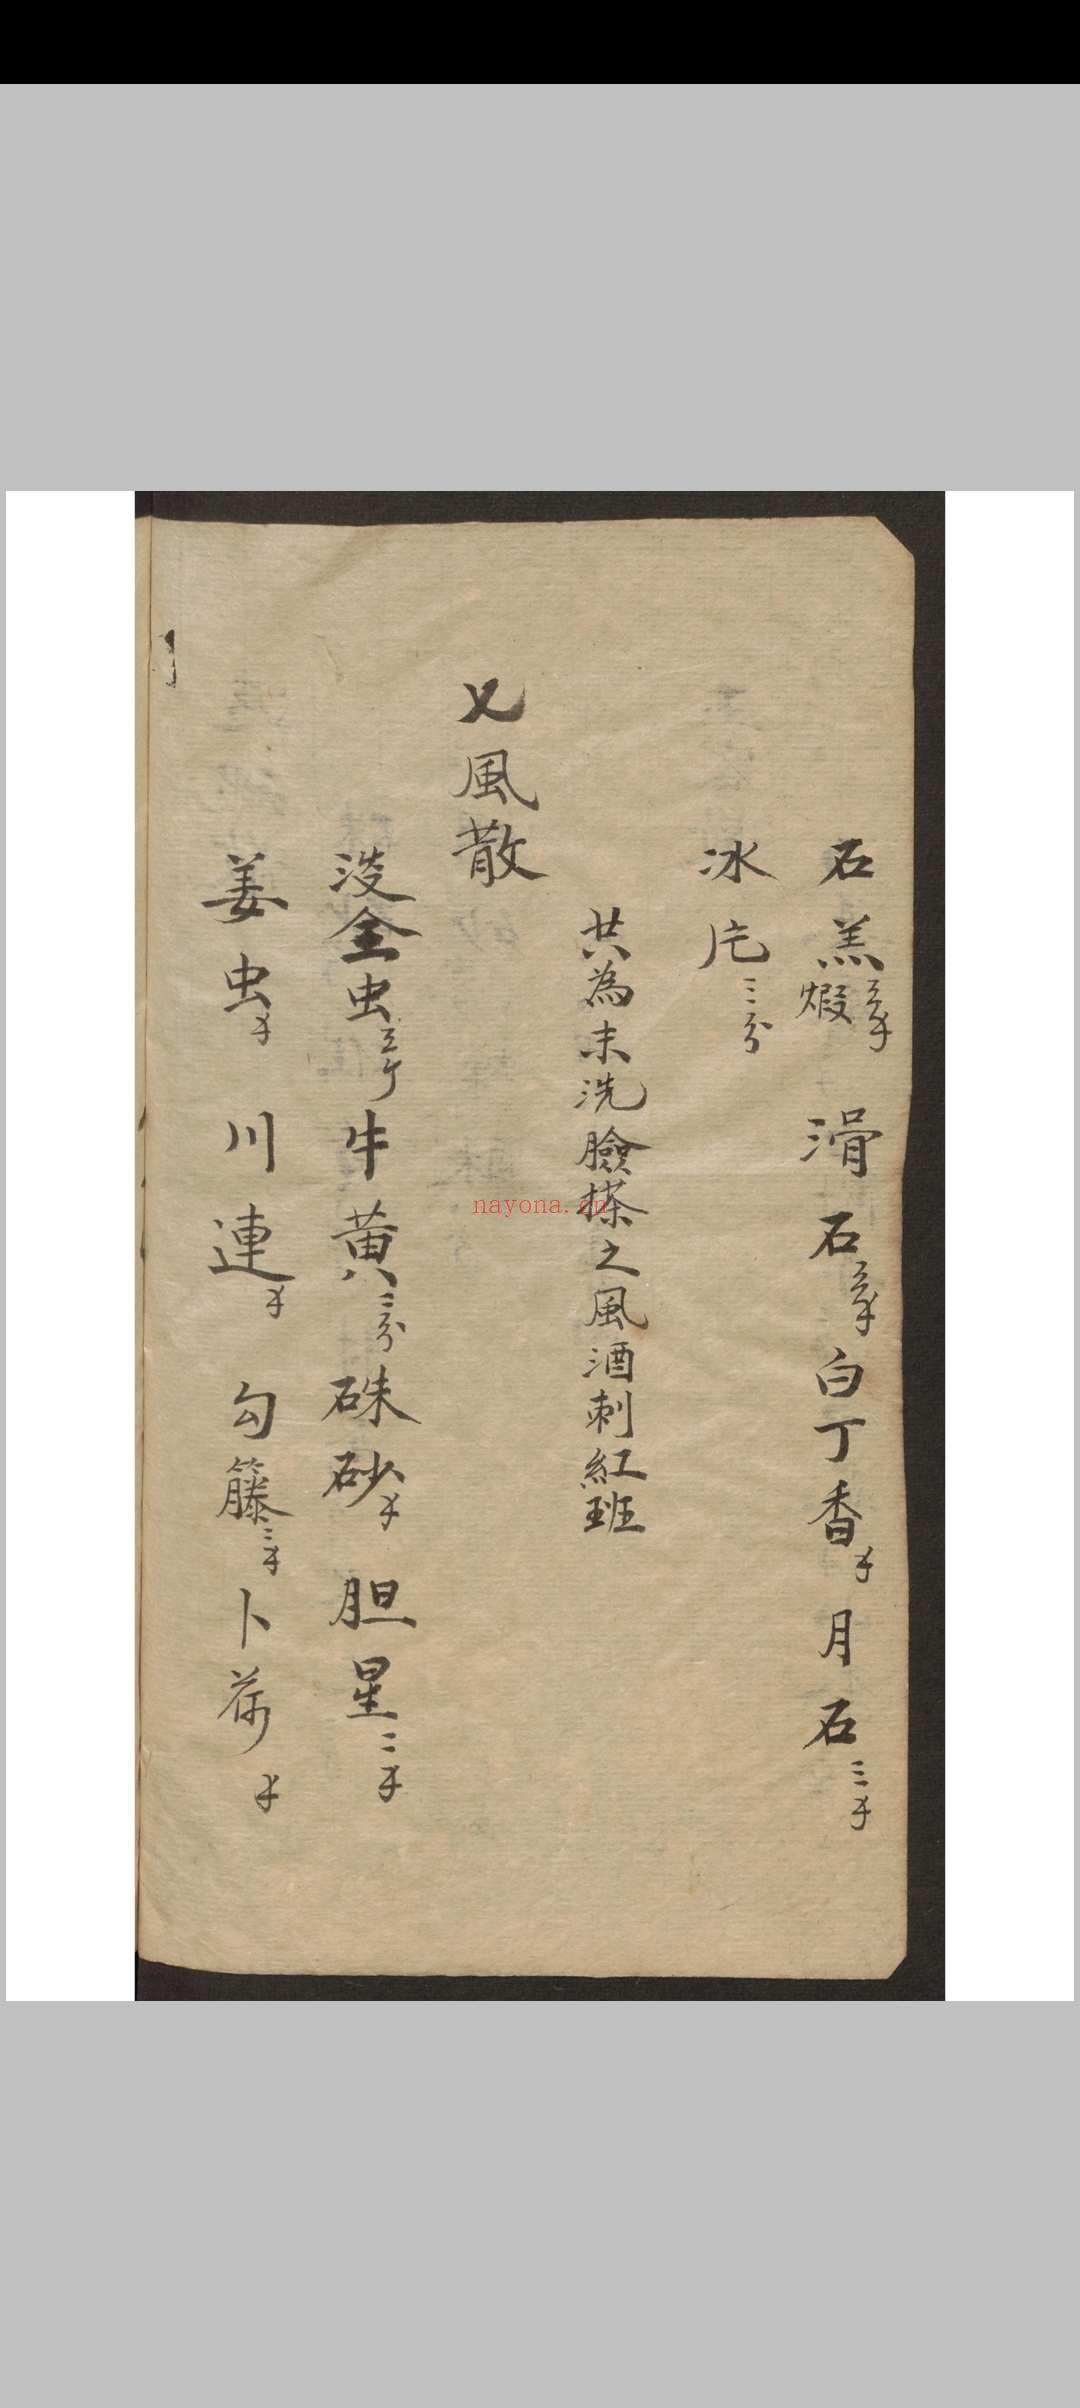 德药坊 医药书 1909